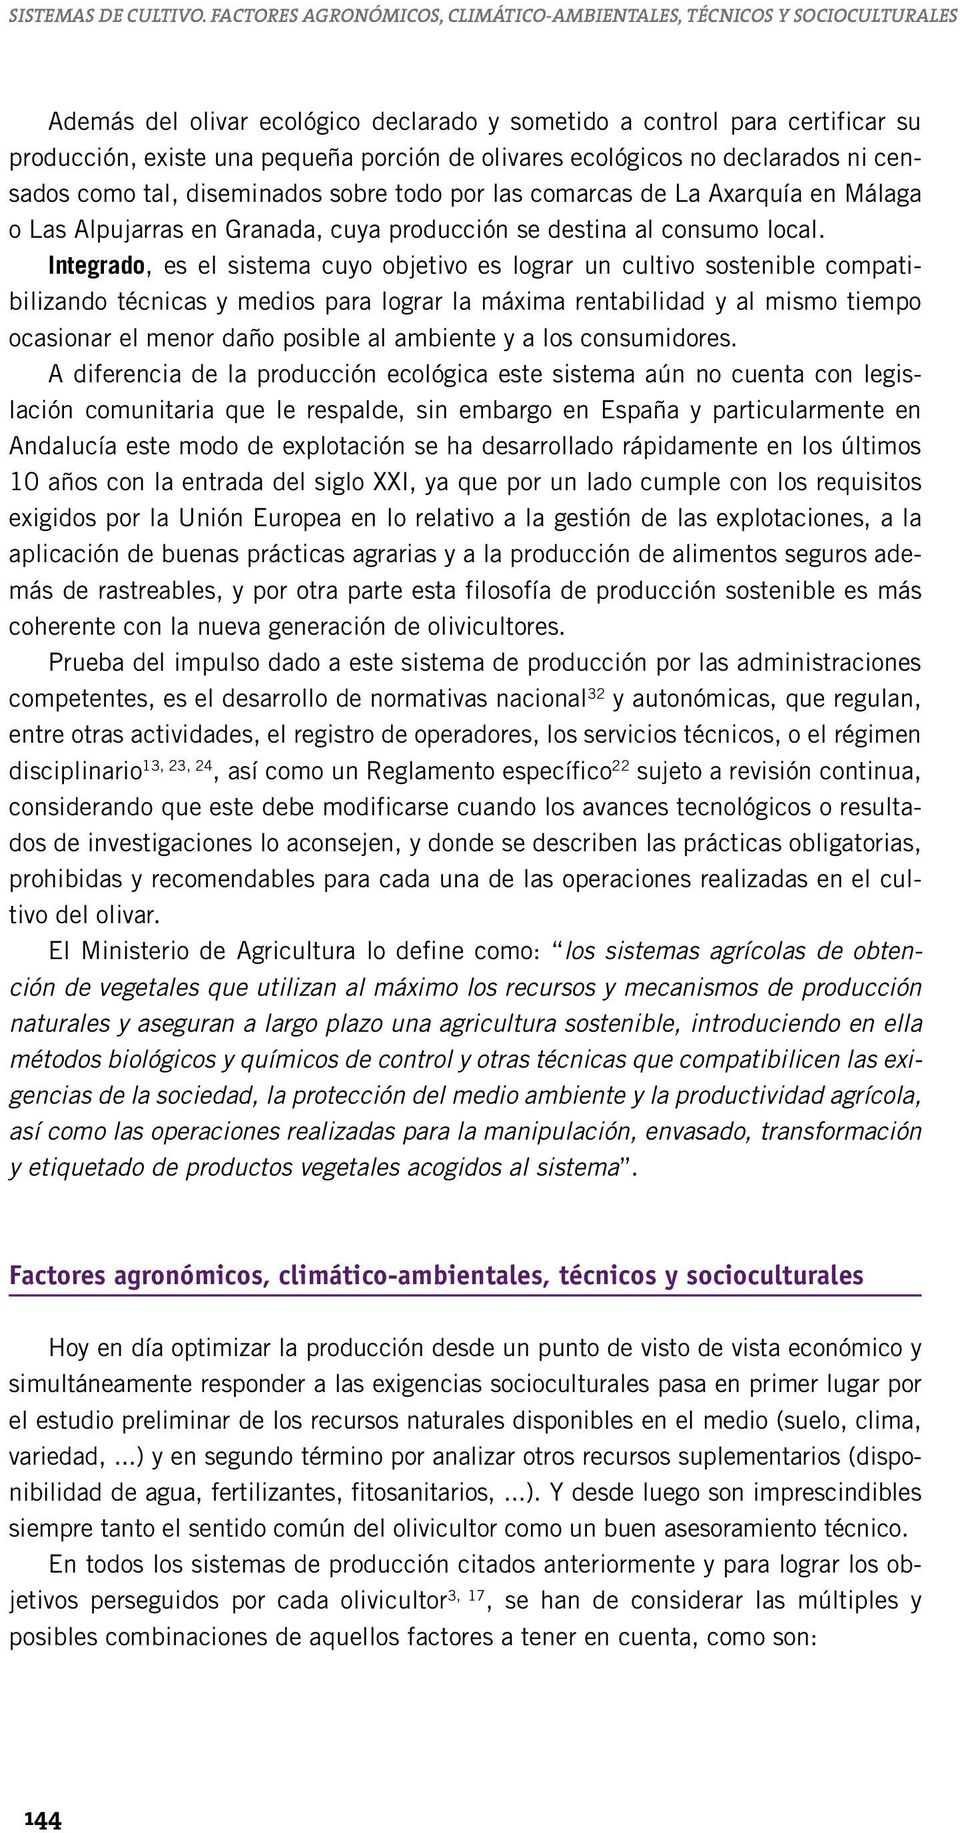 olivares ecológicos no declarados ni censados como tal, diseminados sobre todo por las comarcas de La Axarquía en Málaga o Las Alpujarras en Granada, cuya producción se destina al consumo local.